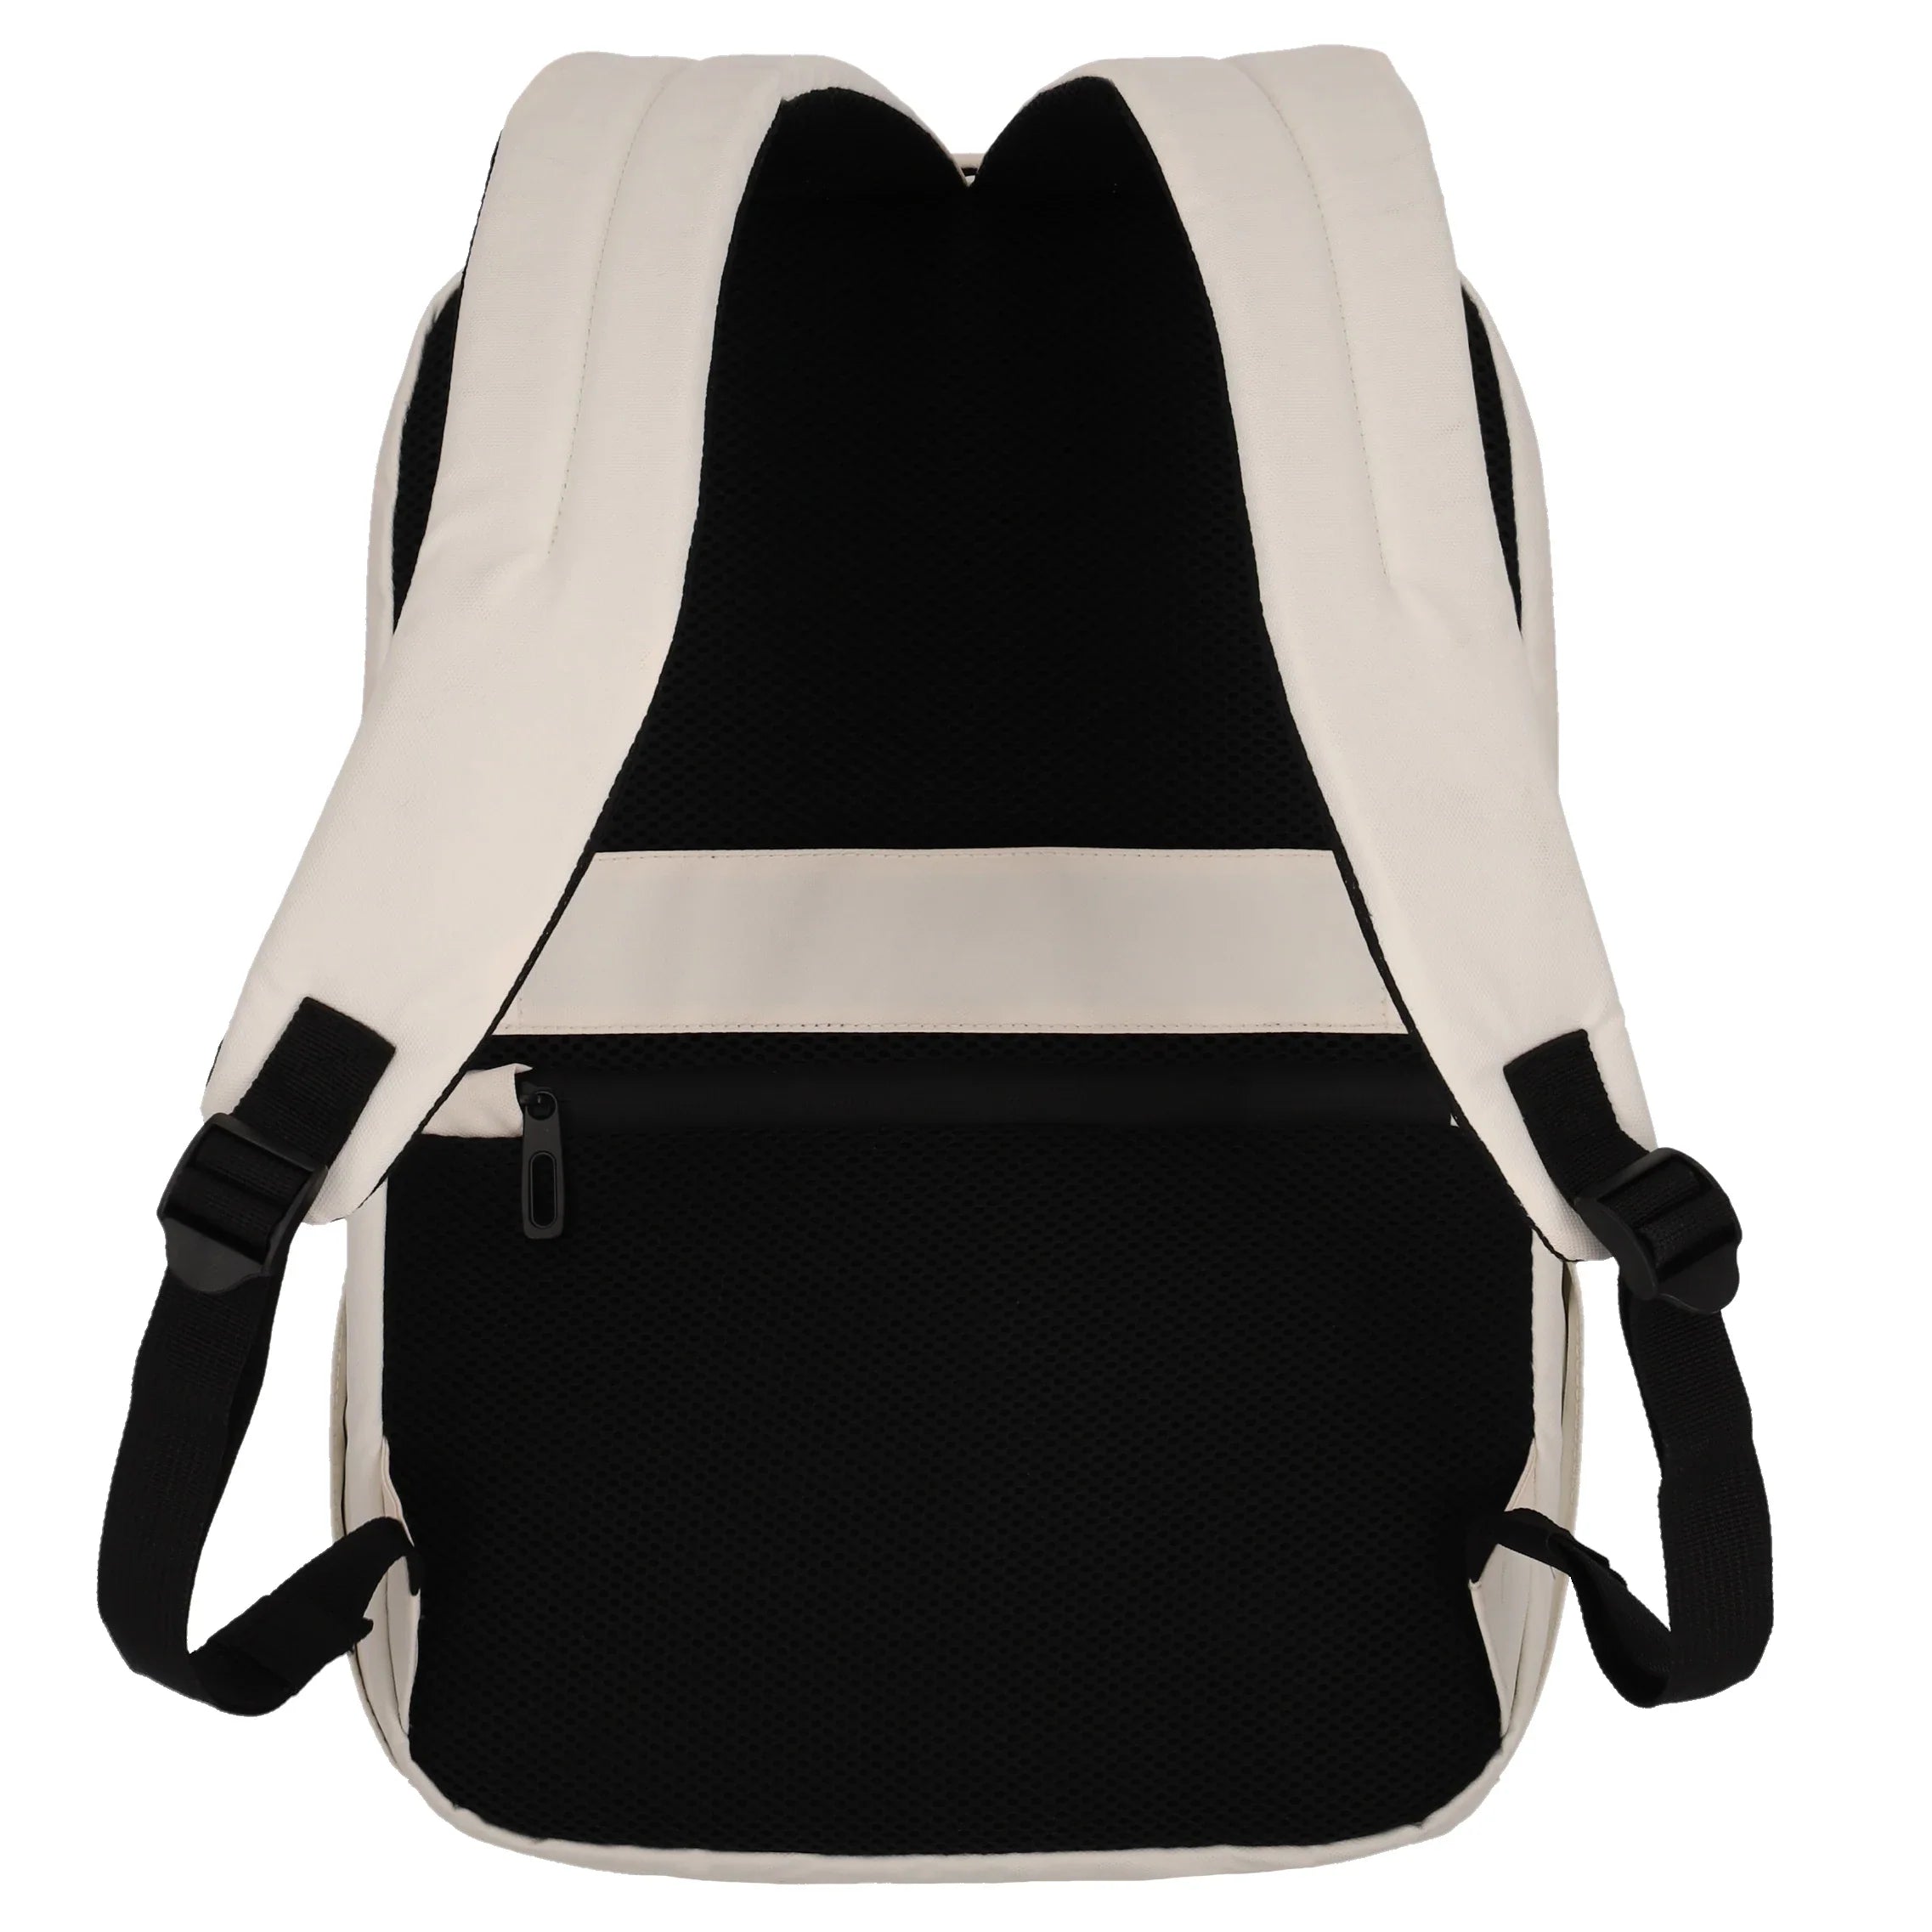 Travelite Basics Boxy Backpack 43 cm - Royal Blue